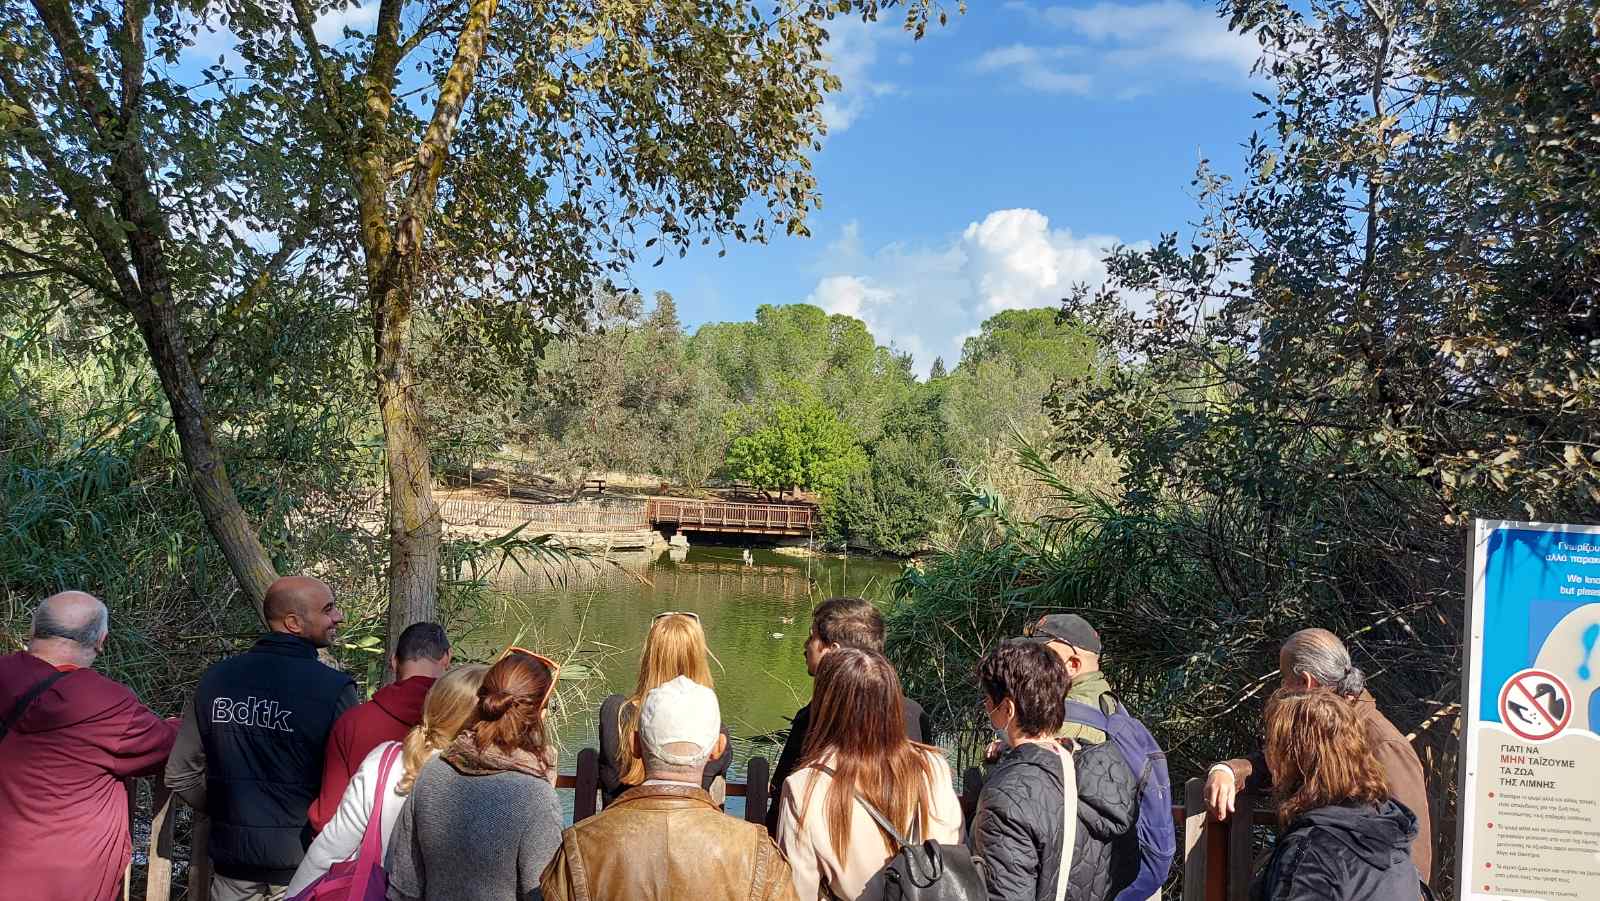 Οι εκπαιδευόμενοι είναι στο χώρο της λίμνης, που περιβάλλεται από ψηλά δένδρα. Πάπιες κολυμπούν στο νερό, ενώ στο βάθος, απέναντι από τους εκπαιδευόμενους βρίσκεται μια ξύλινη γέφυρα.